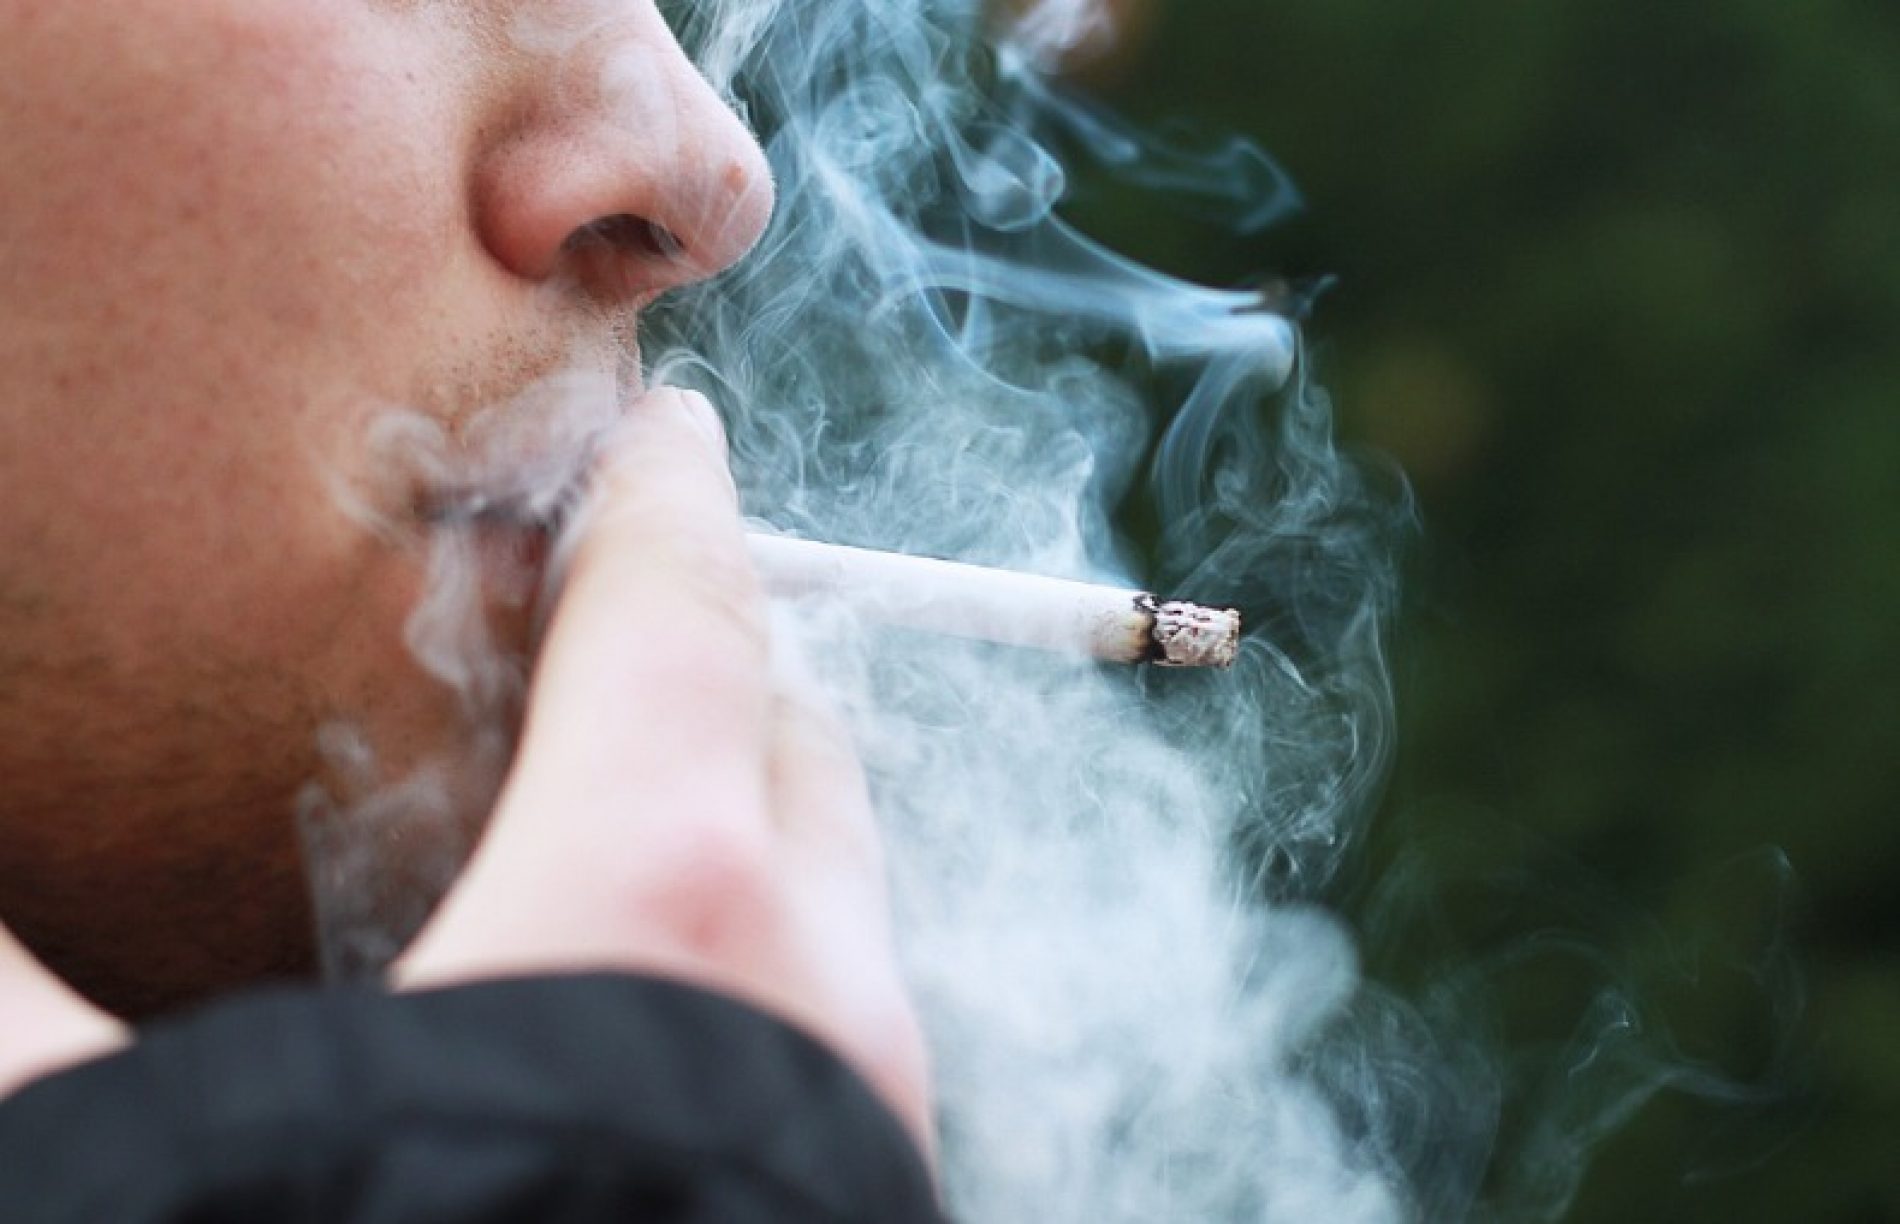 SAÚDE: Segundo pesquisas cigarro contrabandeado é ainda mais prejudicial